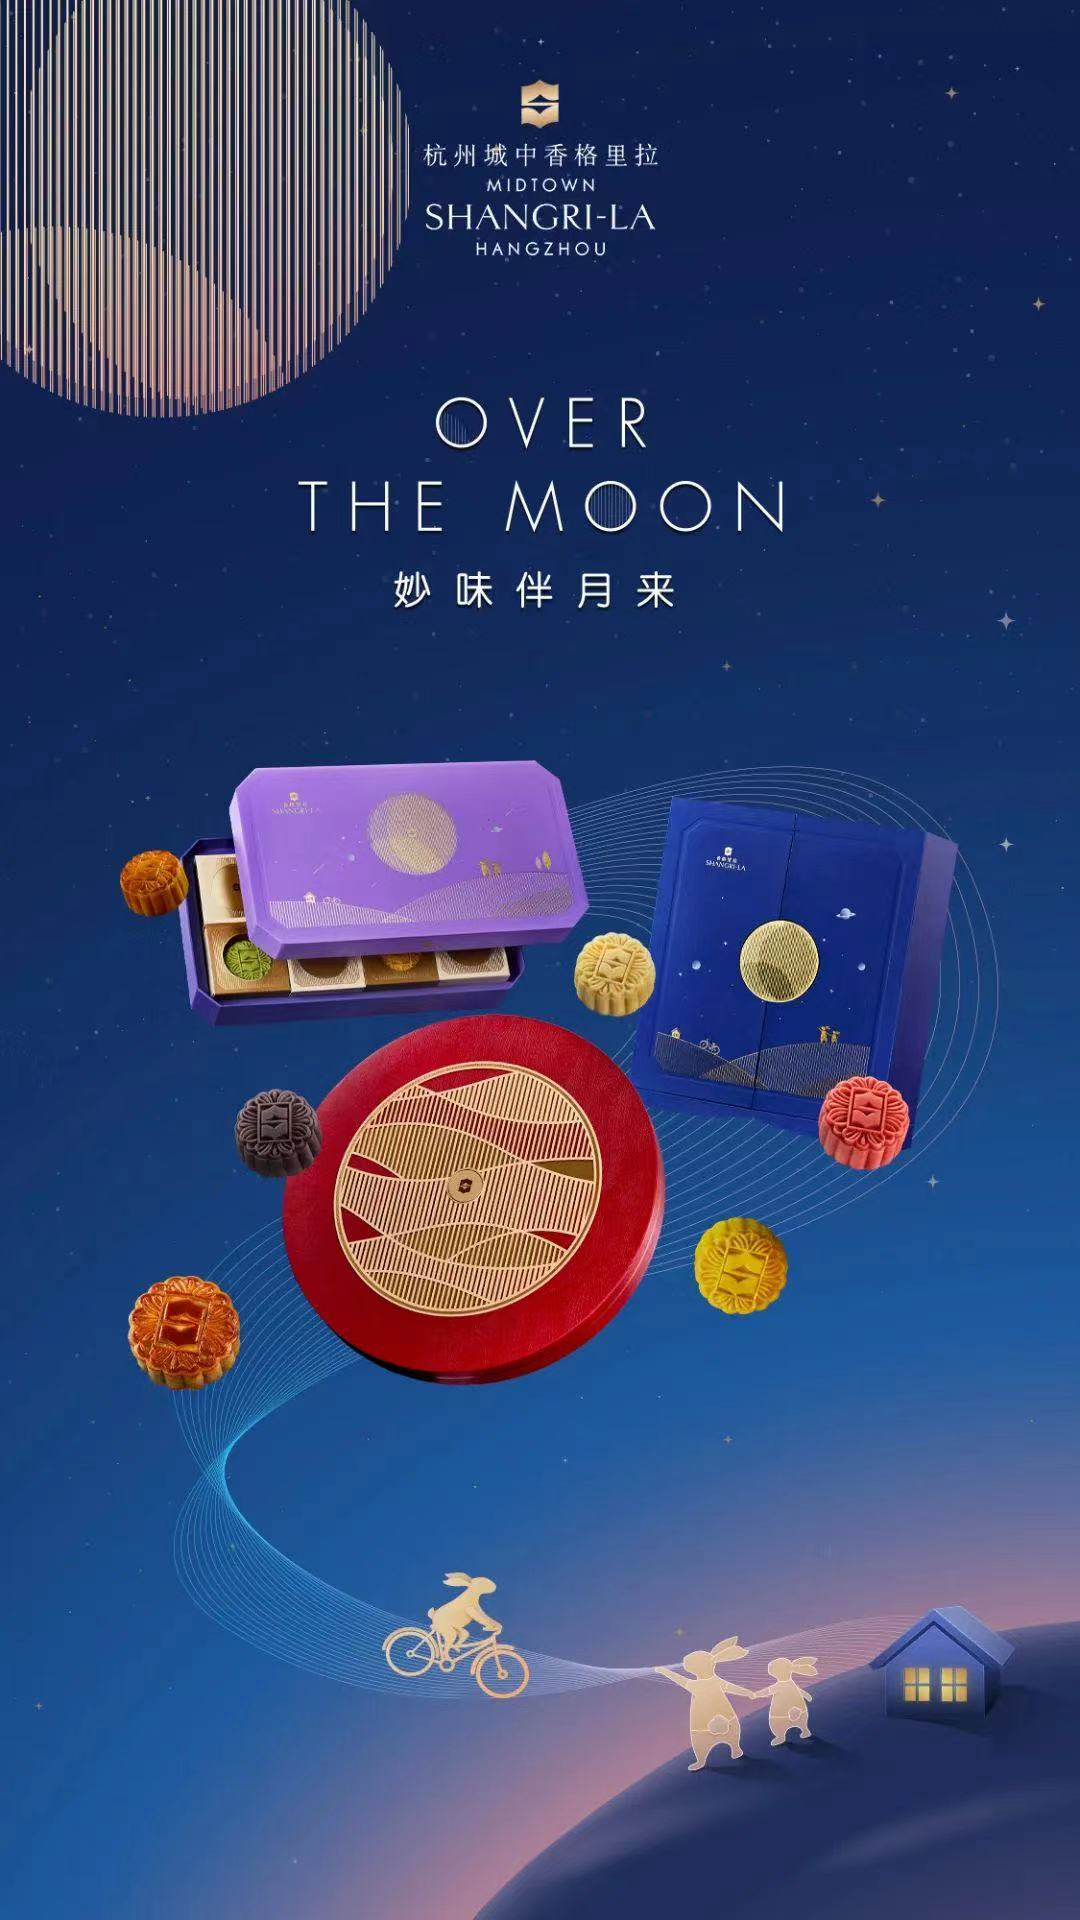 杭州城中香格里拉酒店中秋节创意主题――妙味伴月来